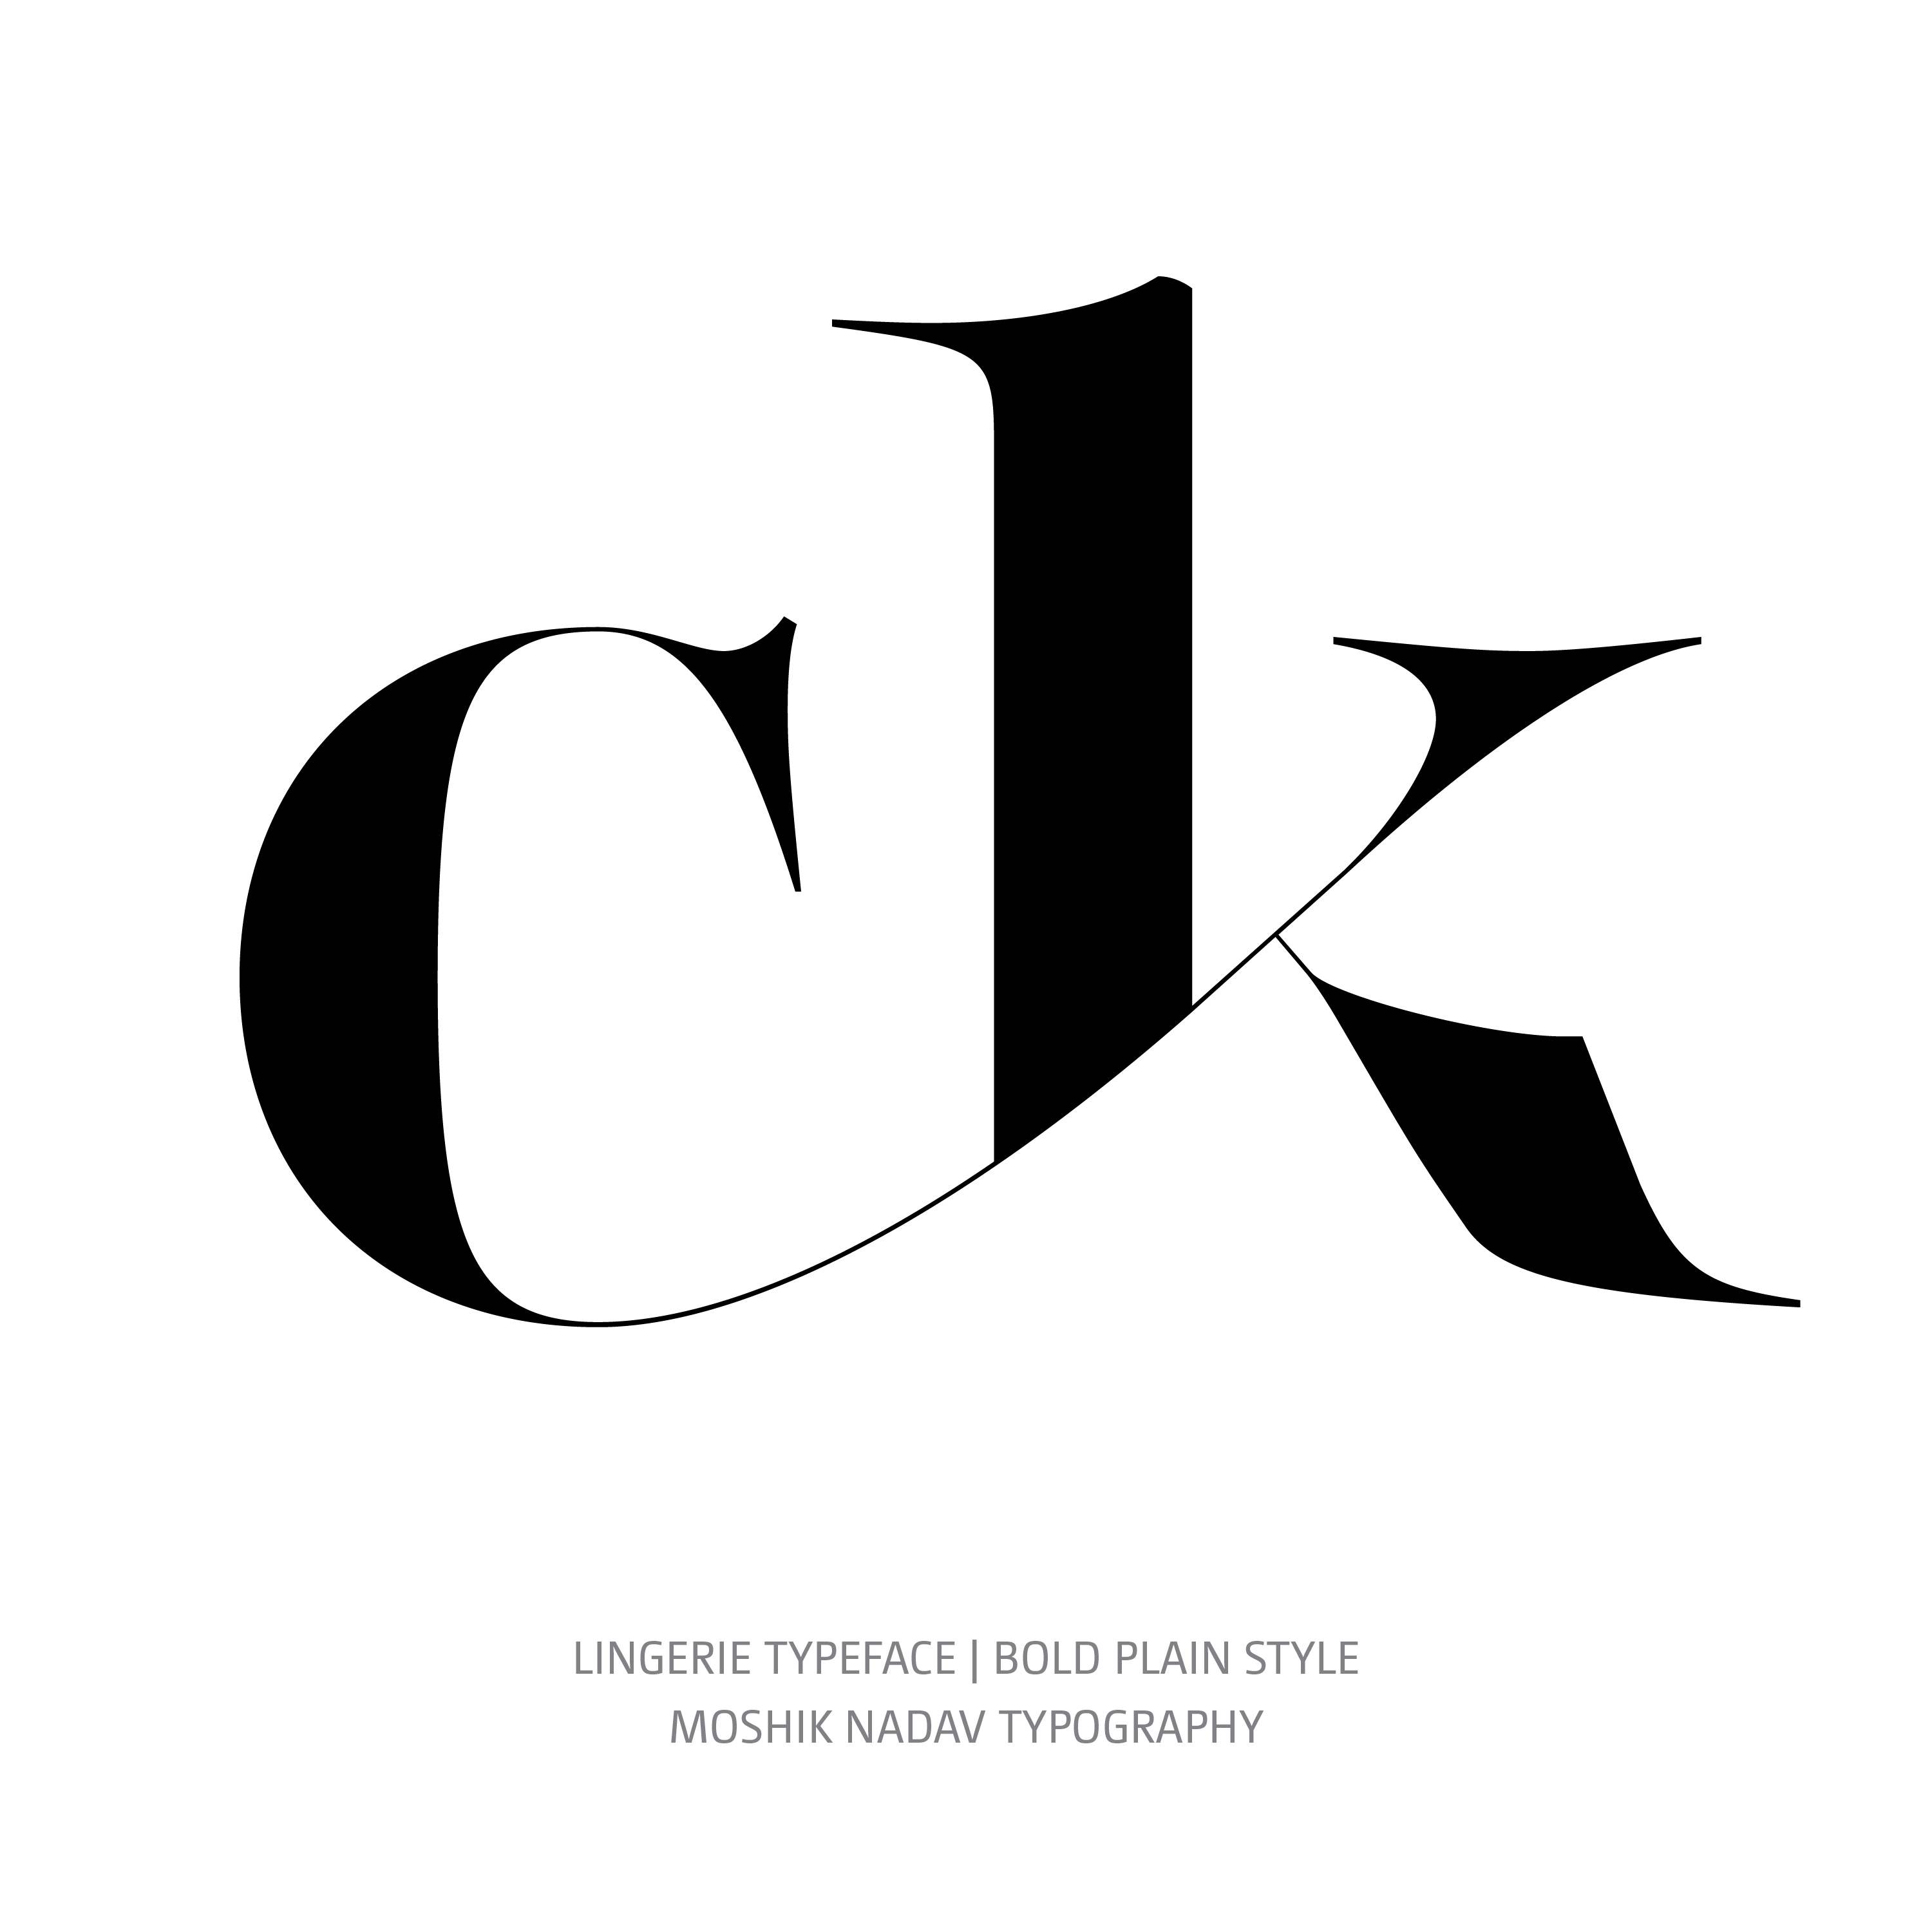 Lingerie Typeface Bold Plain glyph